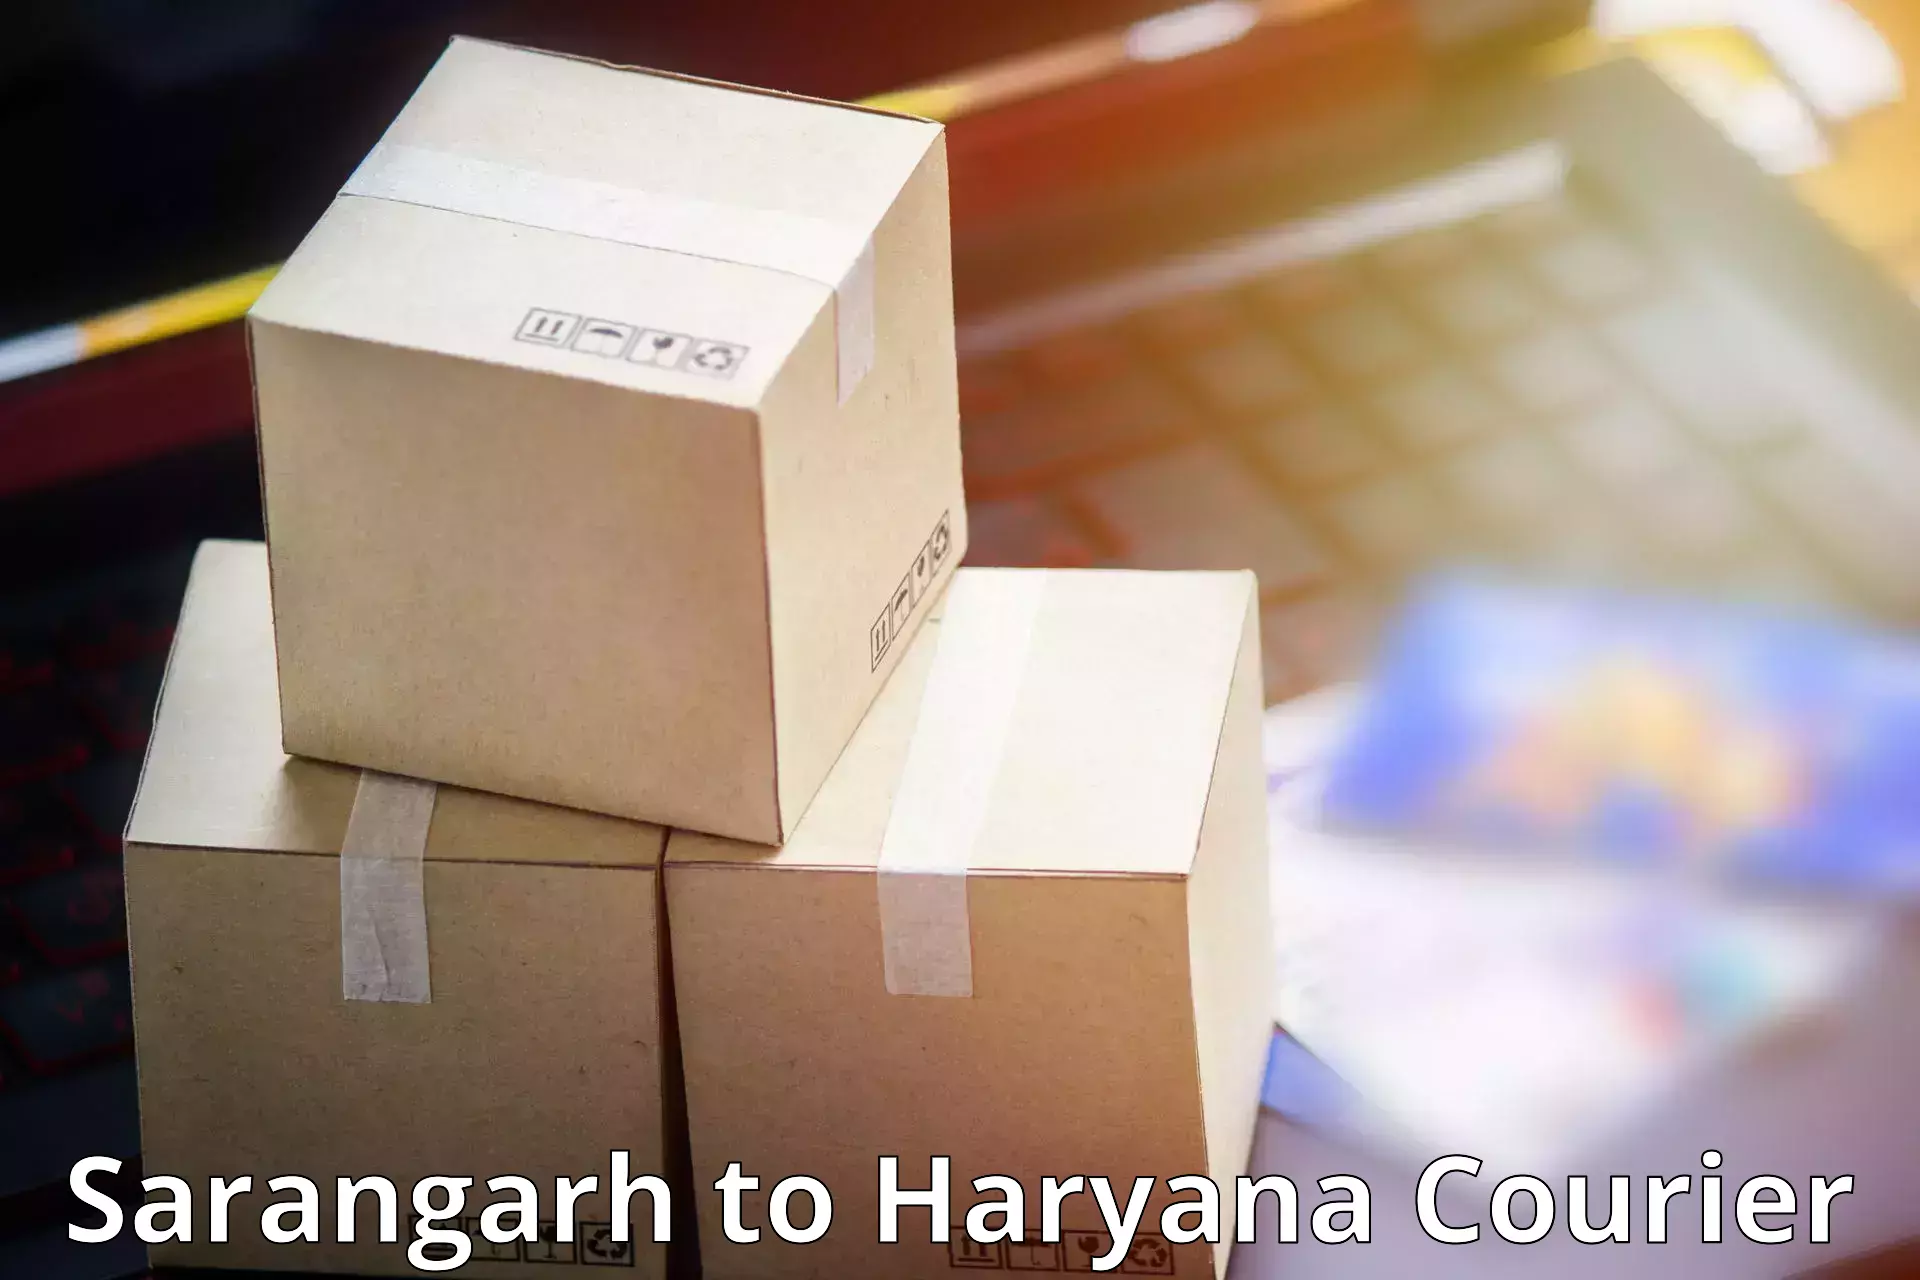 Tailored shipping plans Sarangarh to Jind